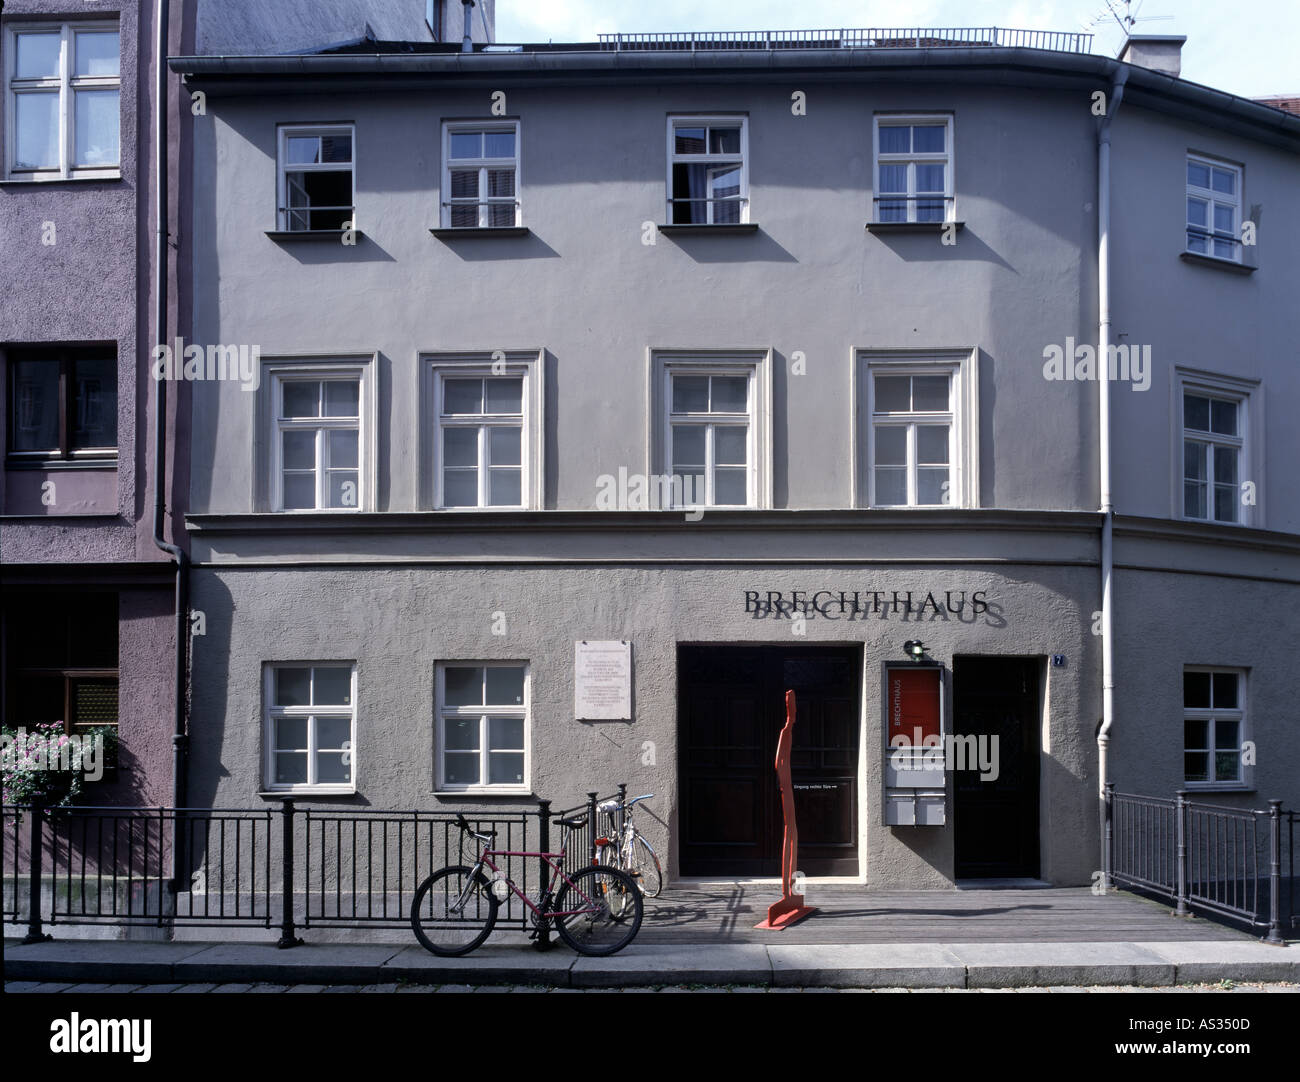 Augsburg, Brechthaus, Geburtshaus von Berthold Brecht Stockfoto